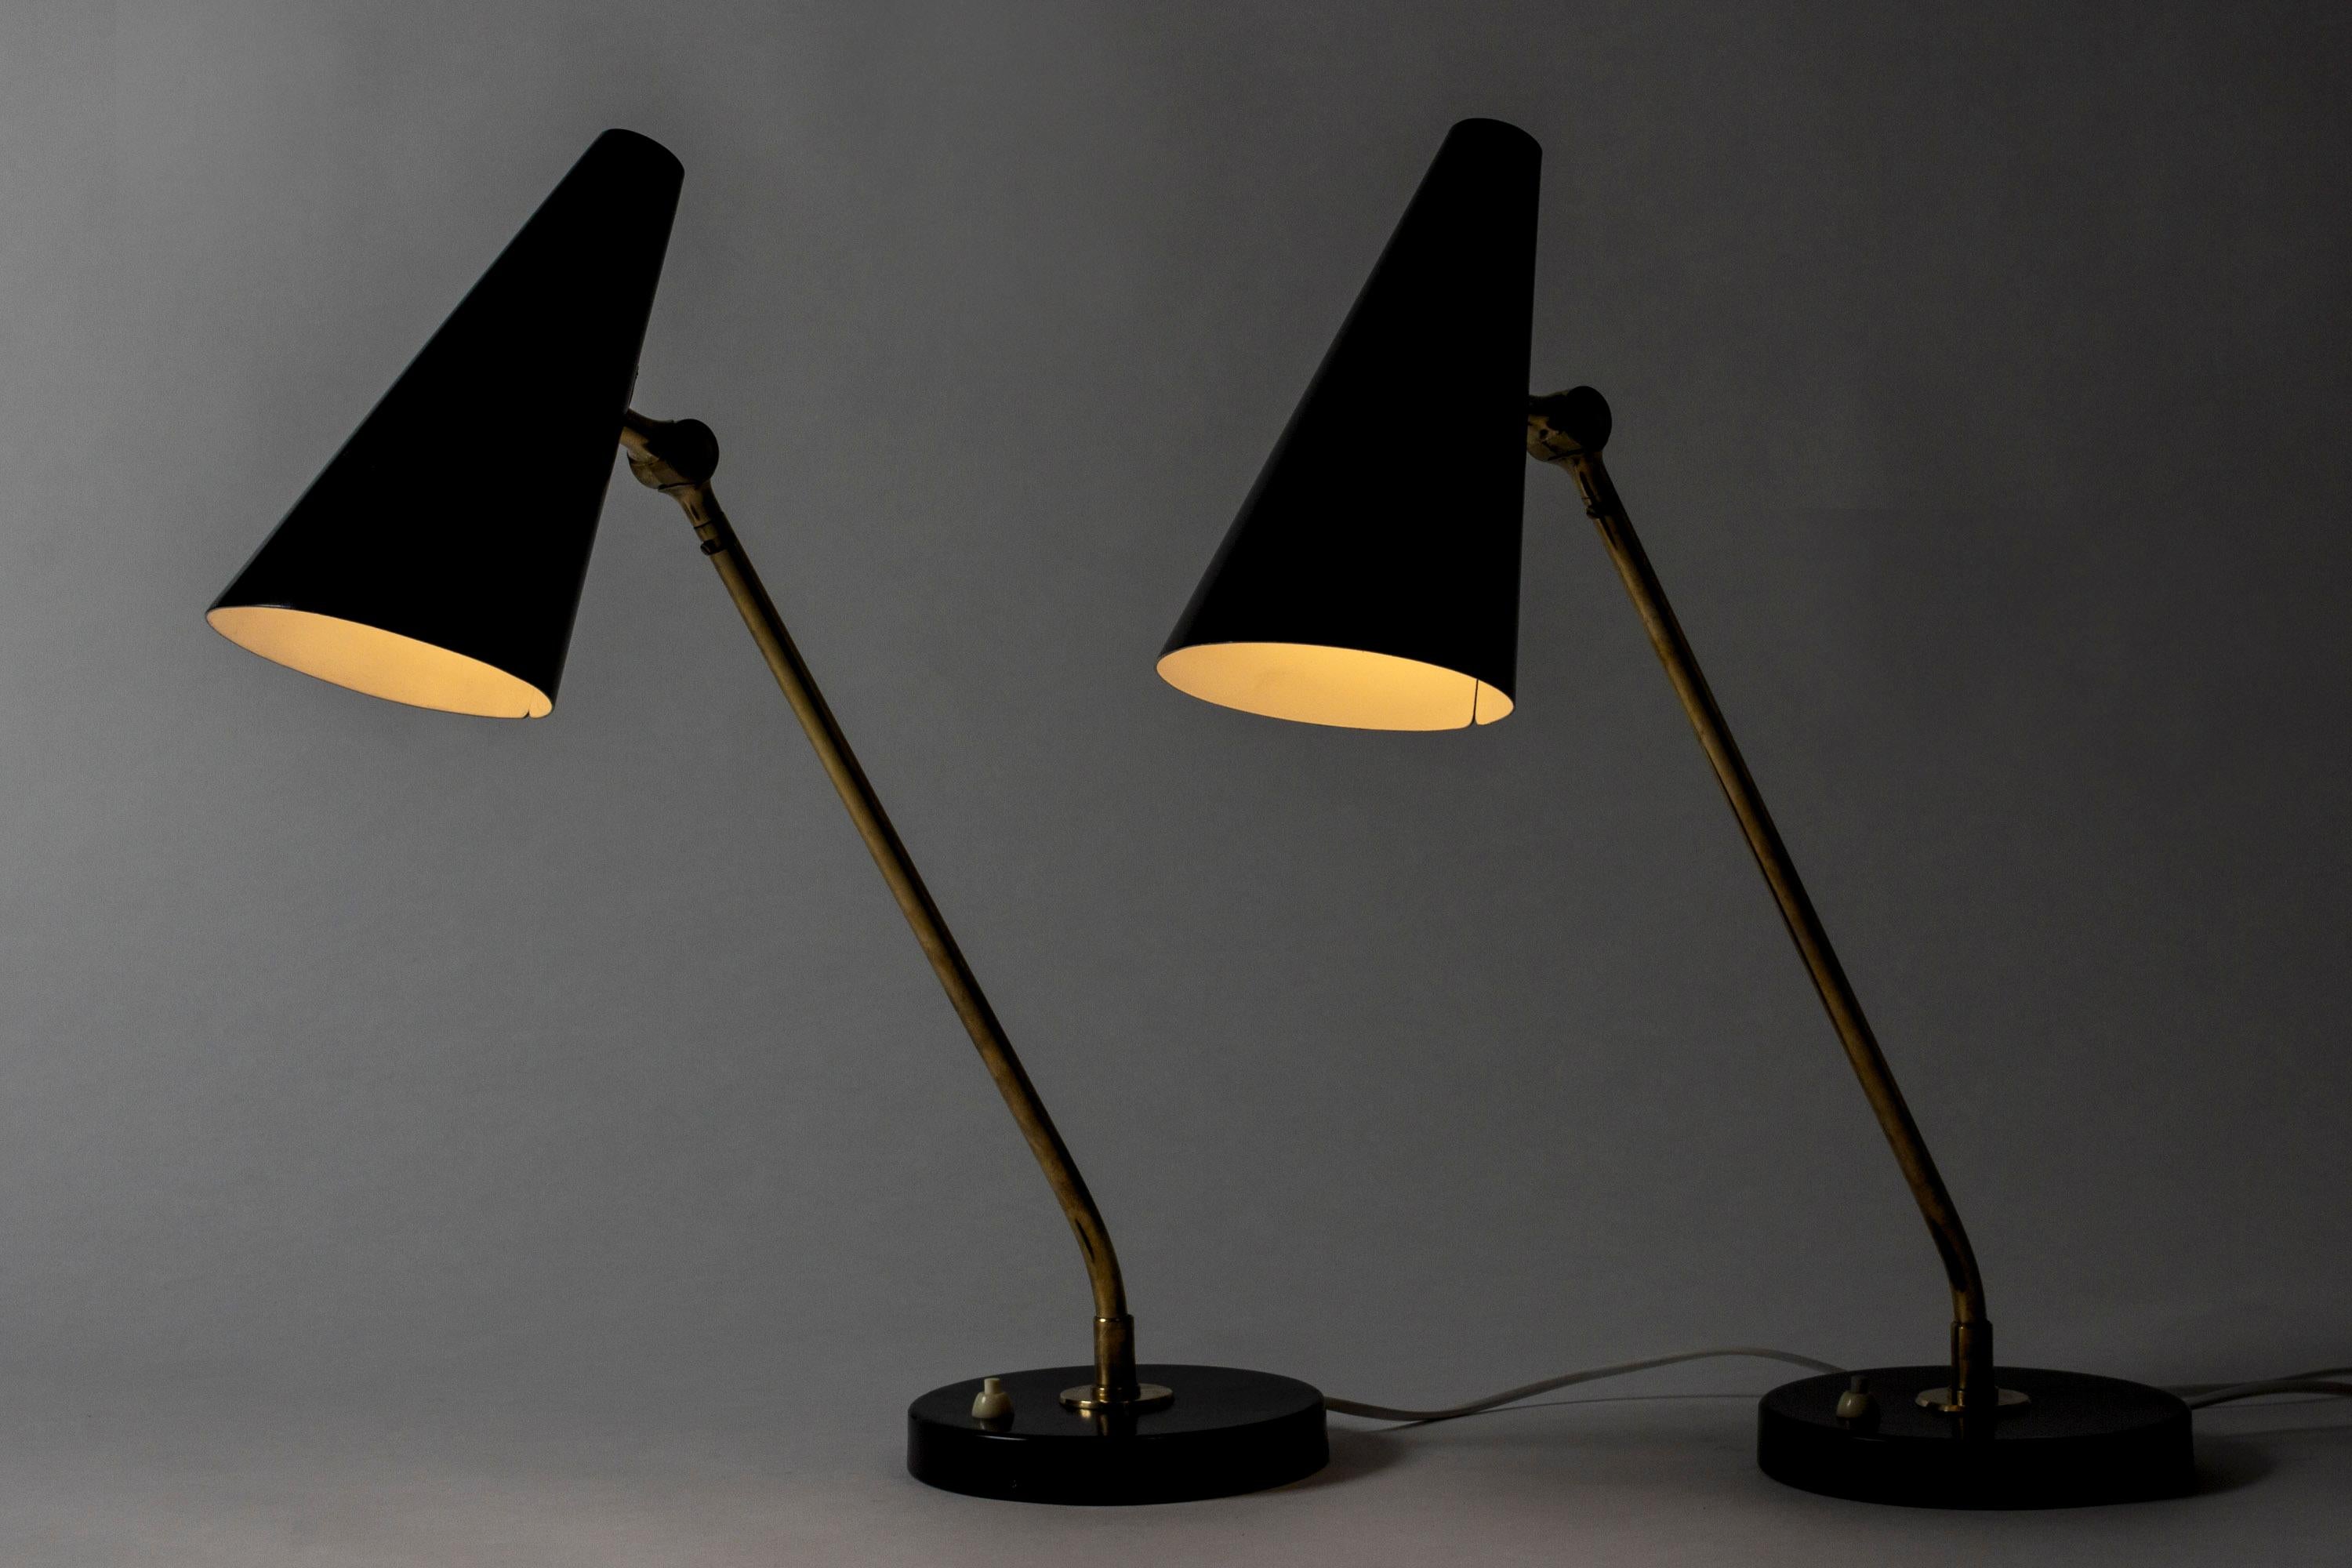 Paire d'étonnantes lampes de table ou de bureau par Bertil Brisborg, de grande taille, avec des tiges allongées et remarquablement angulaires. Fabriqué en laiton avec des ombres et des bases laquées noires.